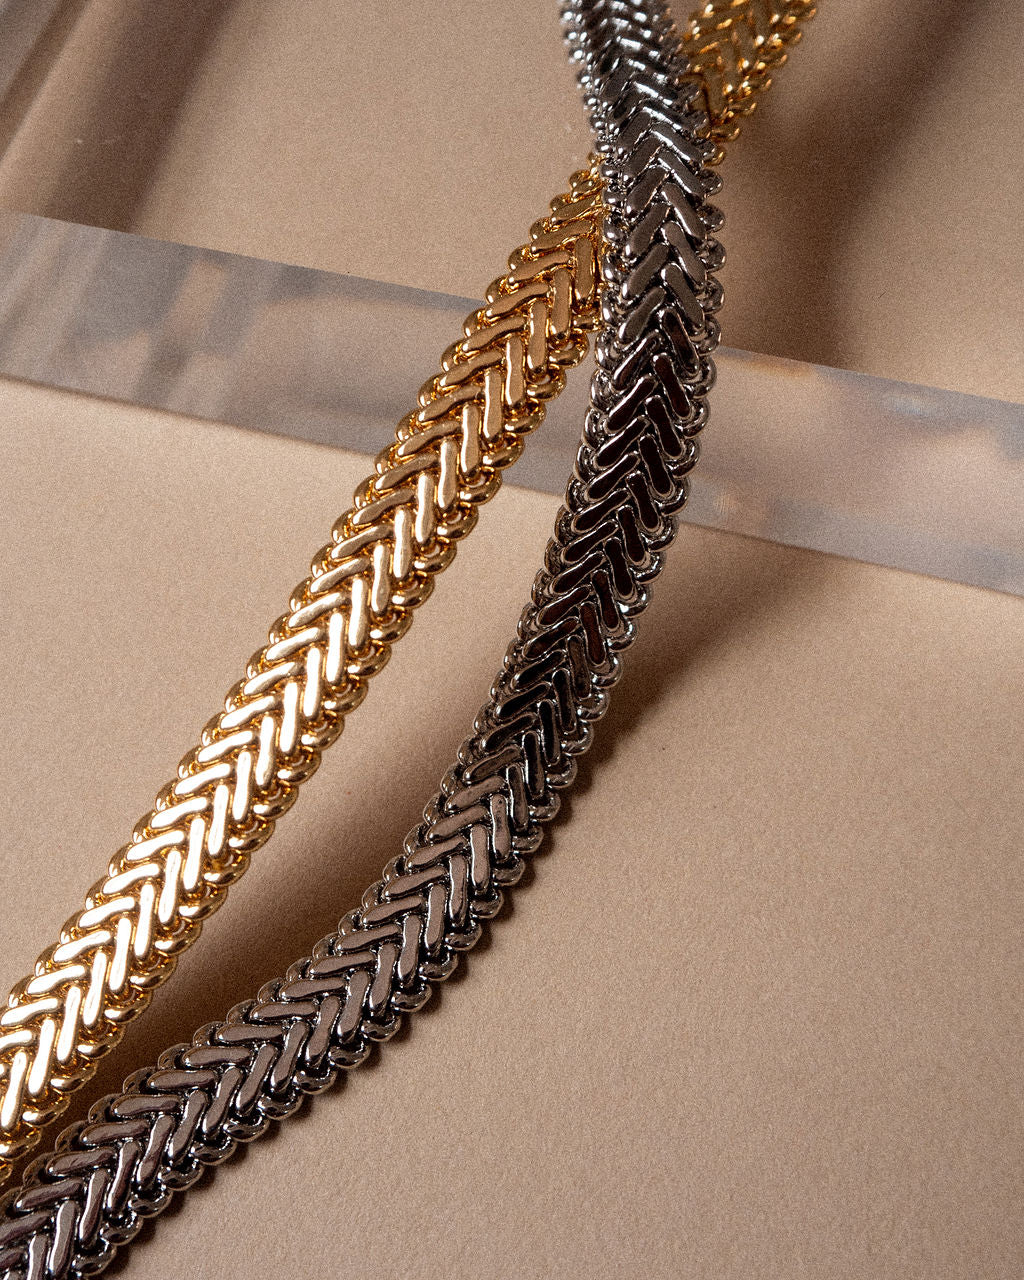 The Domenico Chain Necklace